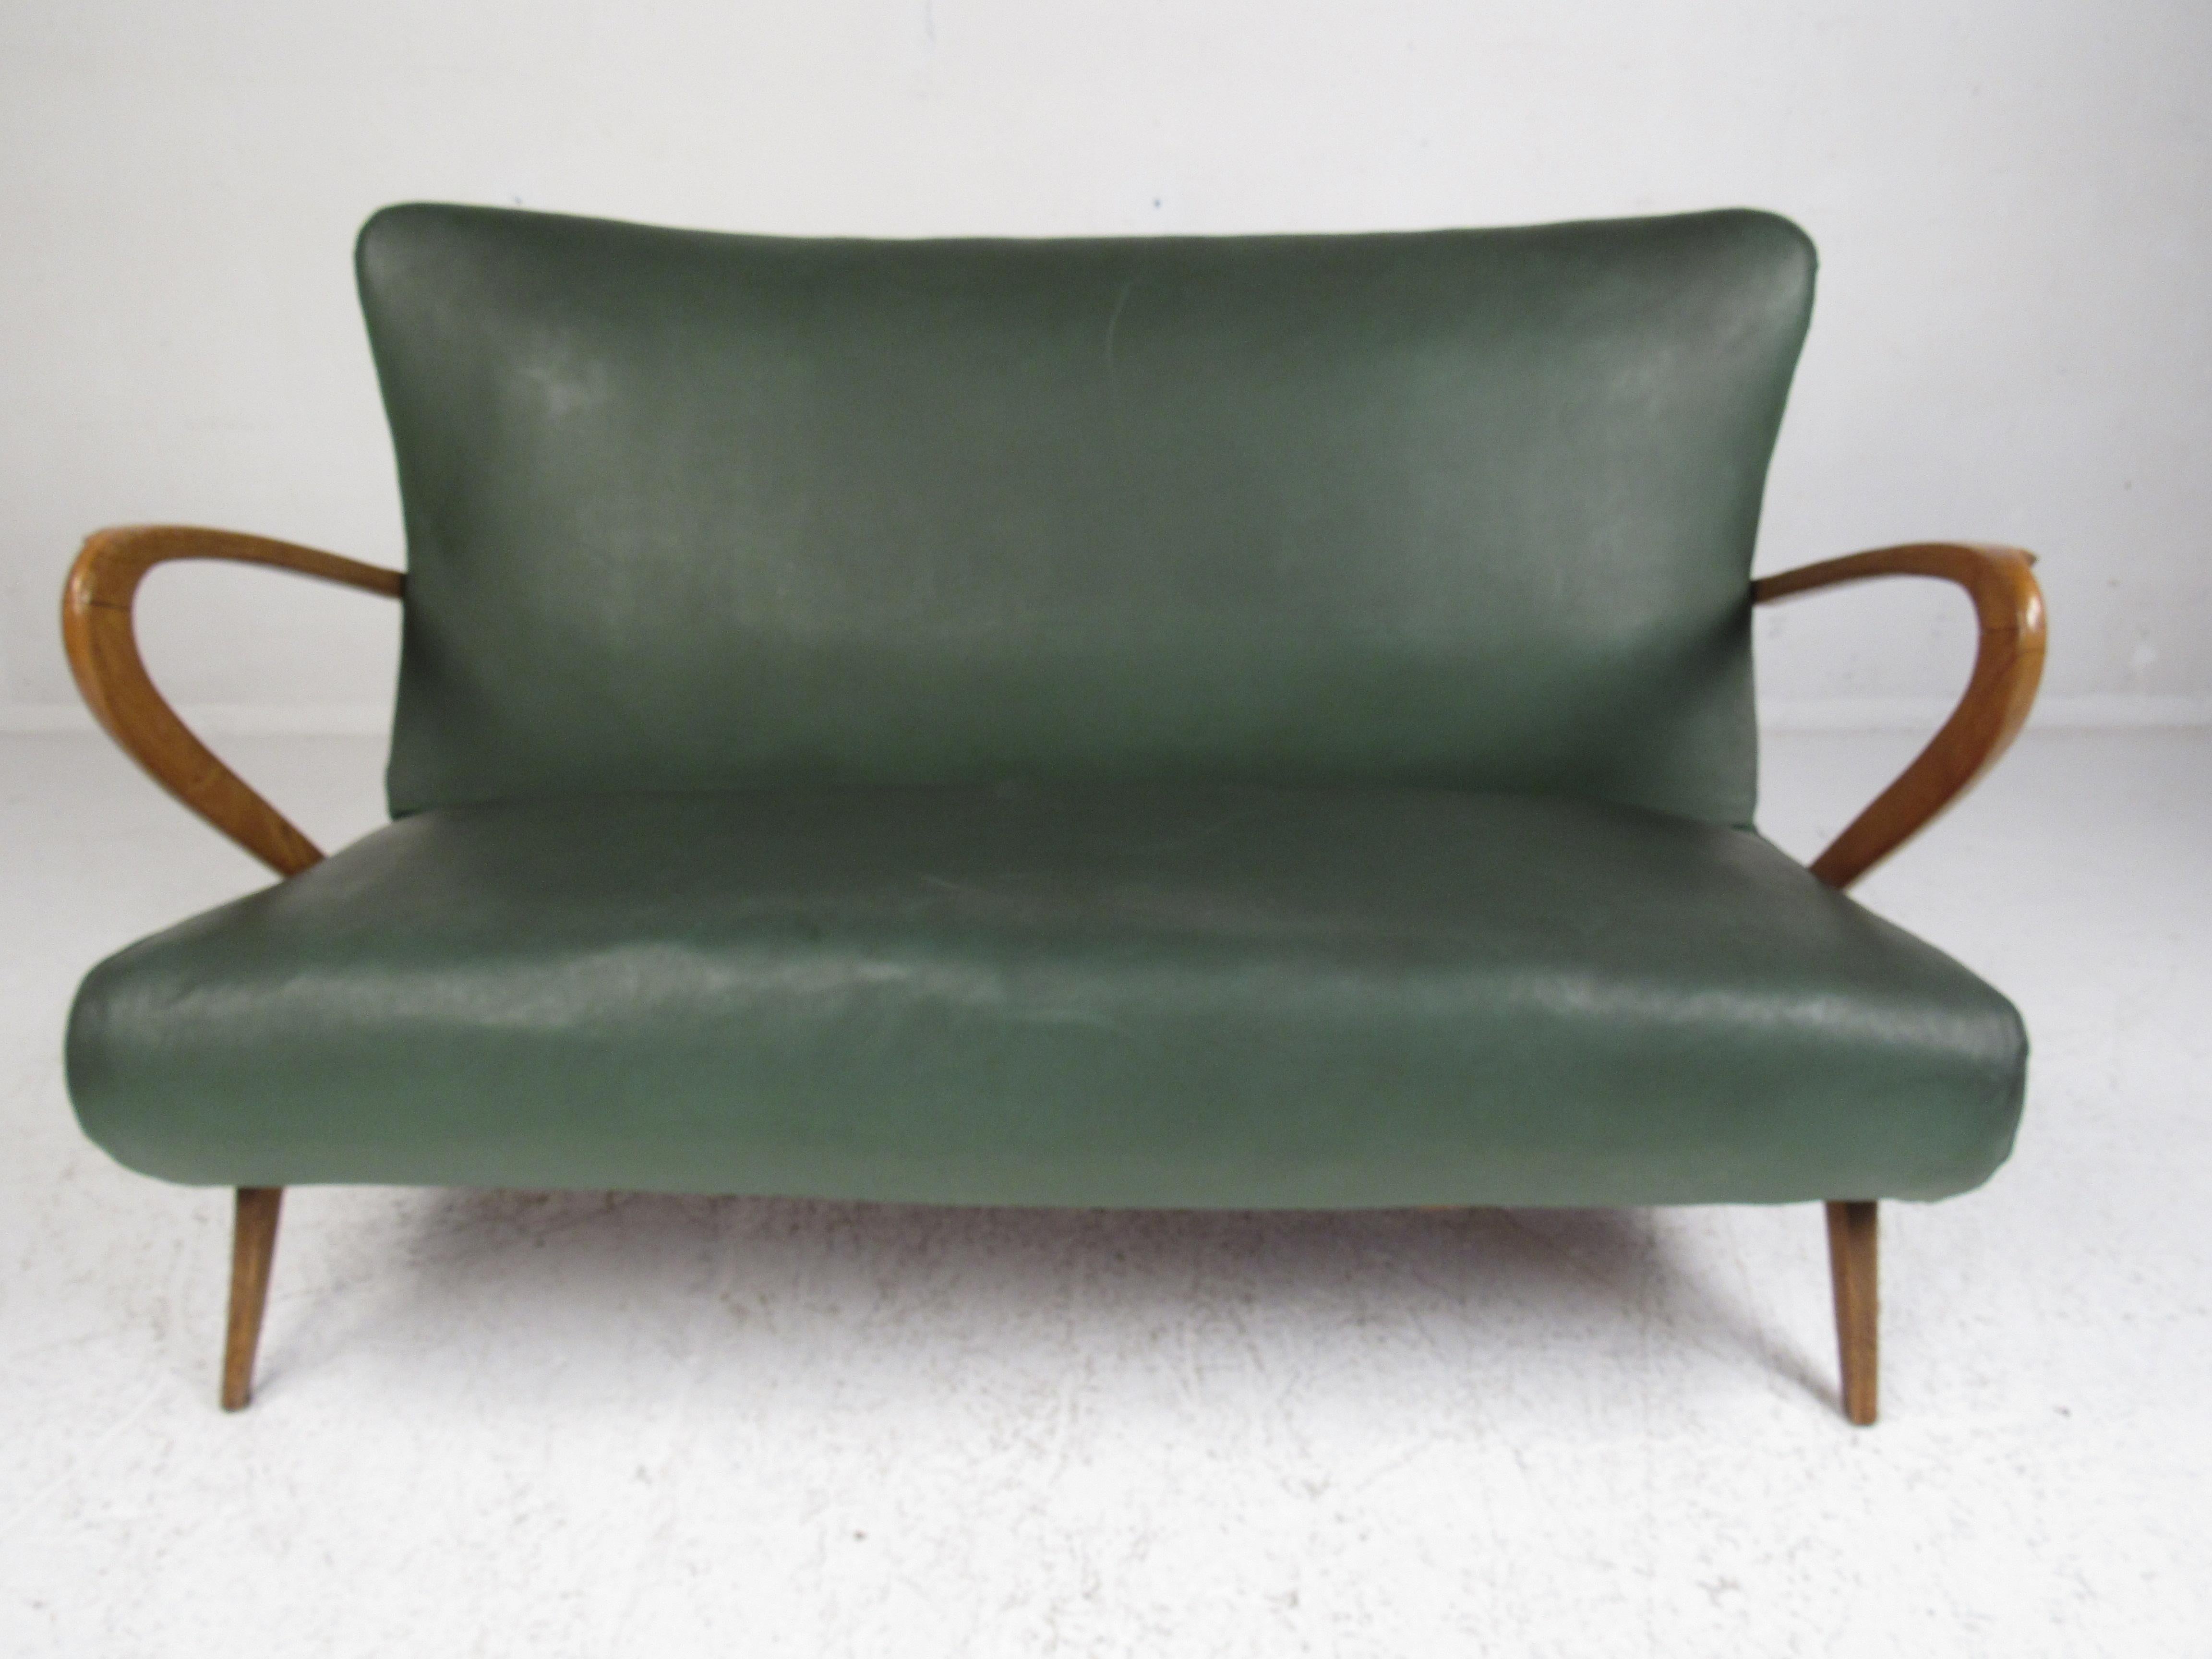 Dieses atemberaubende moderne Sofa im Vintage-Stil hat einen Rahmen aus Eichenholz mit geschwungenen Armlehnen und abgewinkelten Beinen. Ein schlankes und bequemes Design mit grünem Vinylbezug. Dieses wunderbare Sofa im Stil von Paolo Buffa passt zu